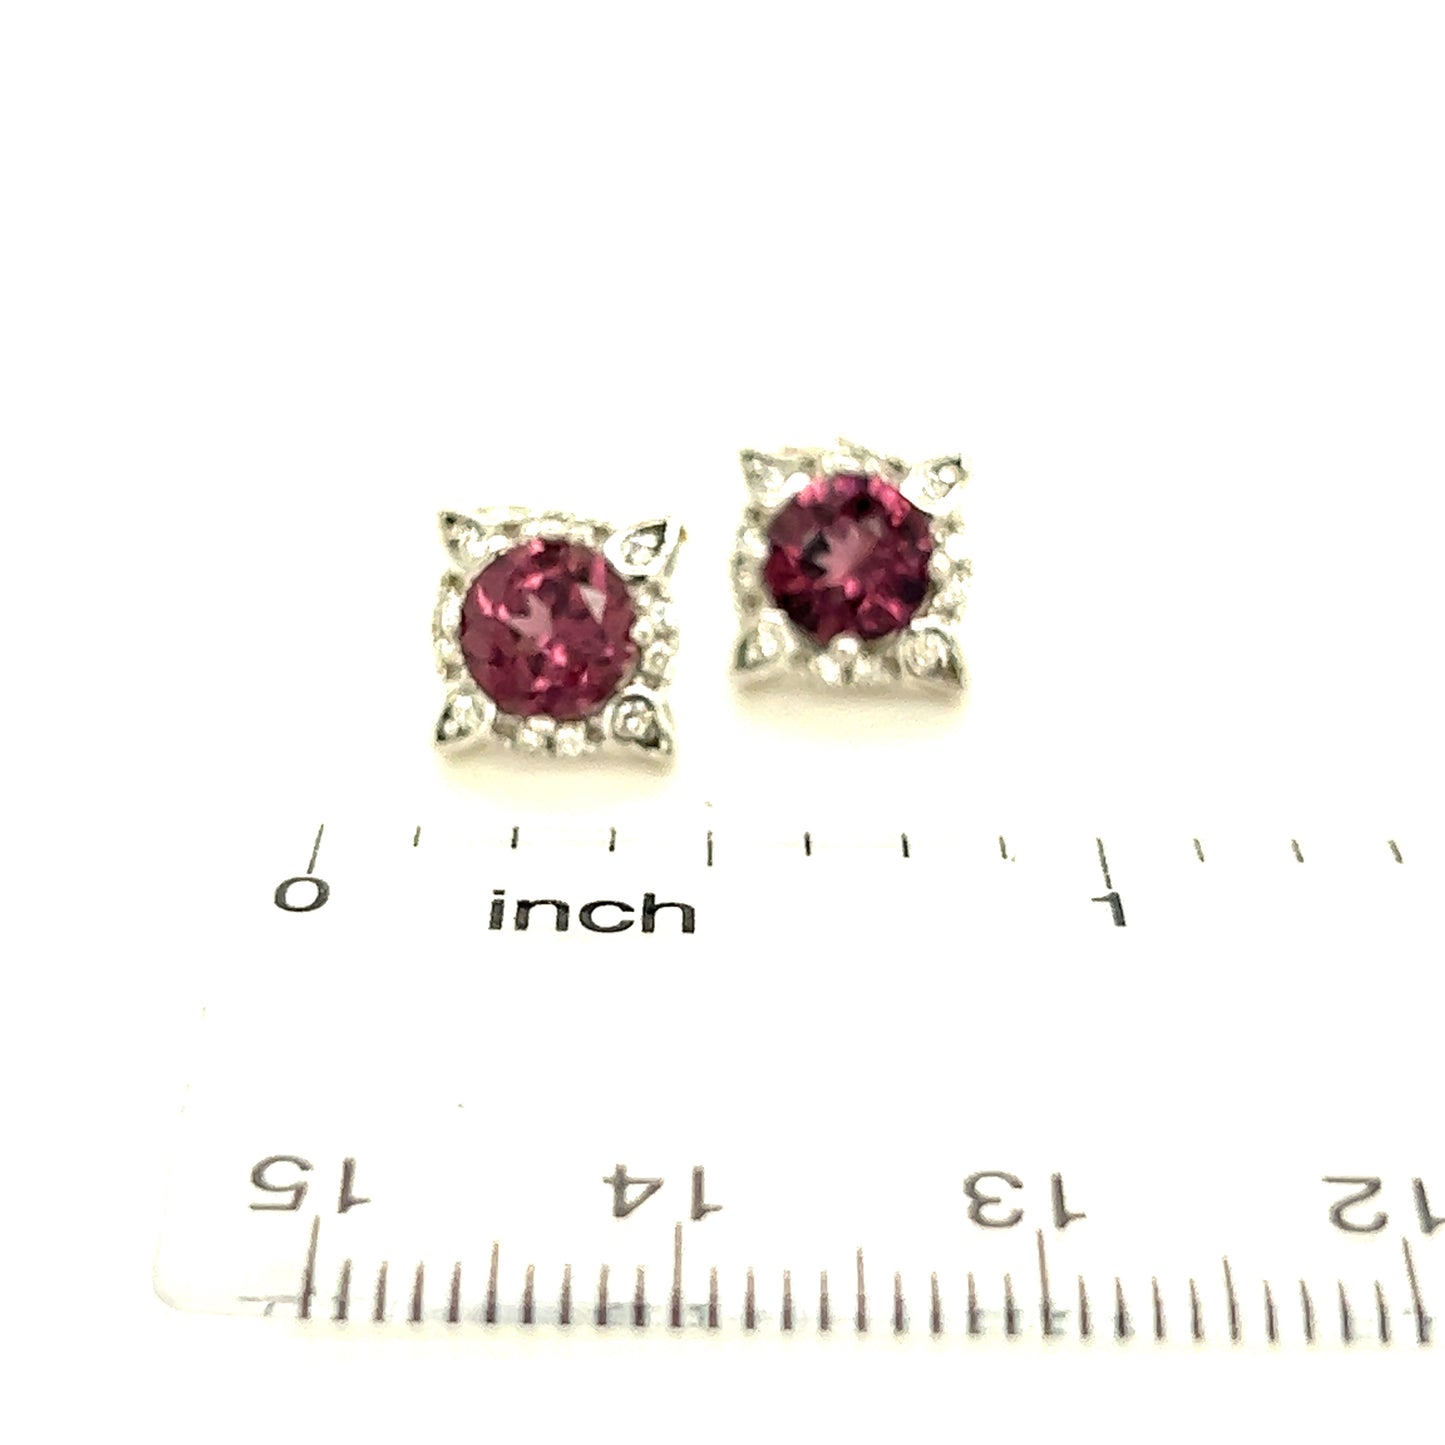 Natural Spinel Diamond Earrings 14k Y Gold 2.04 TCW Certified $3,950 211195 - Certified Fine Jewelry